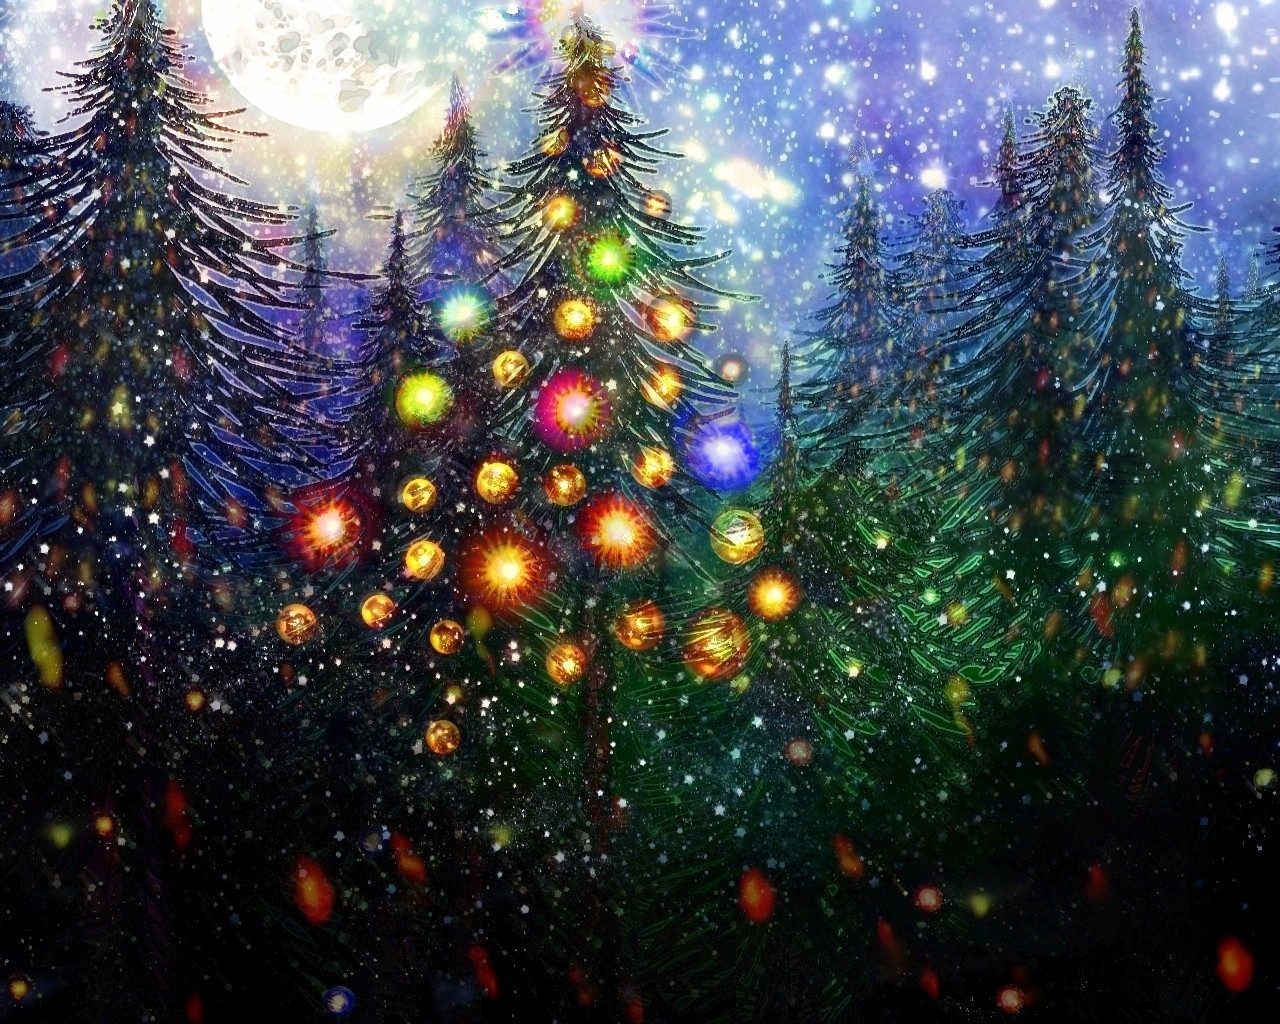 Christmas on Wallpaper-Portal - DeviantArt